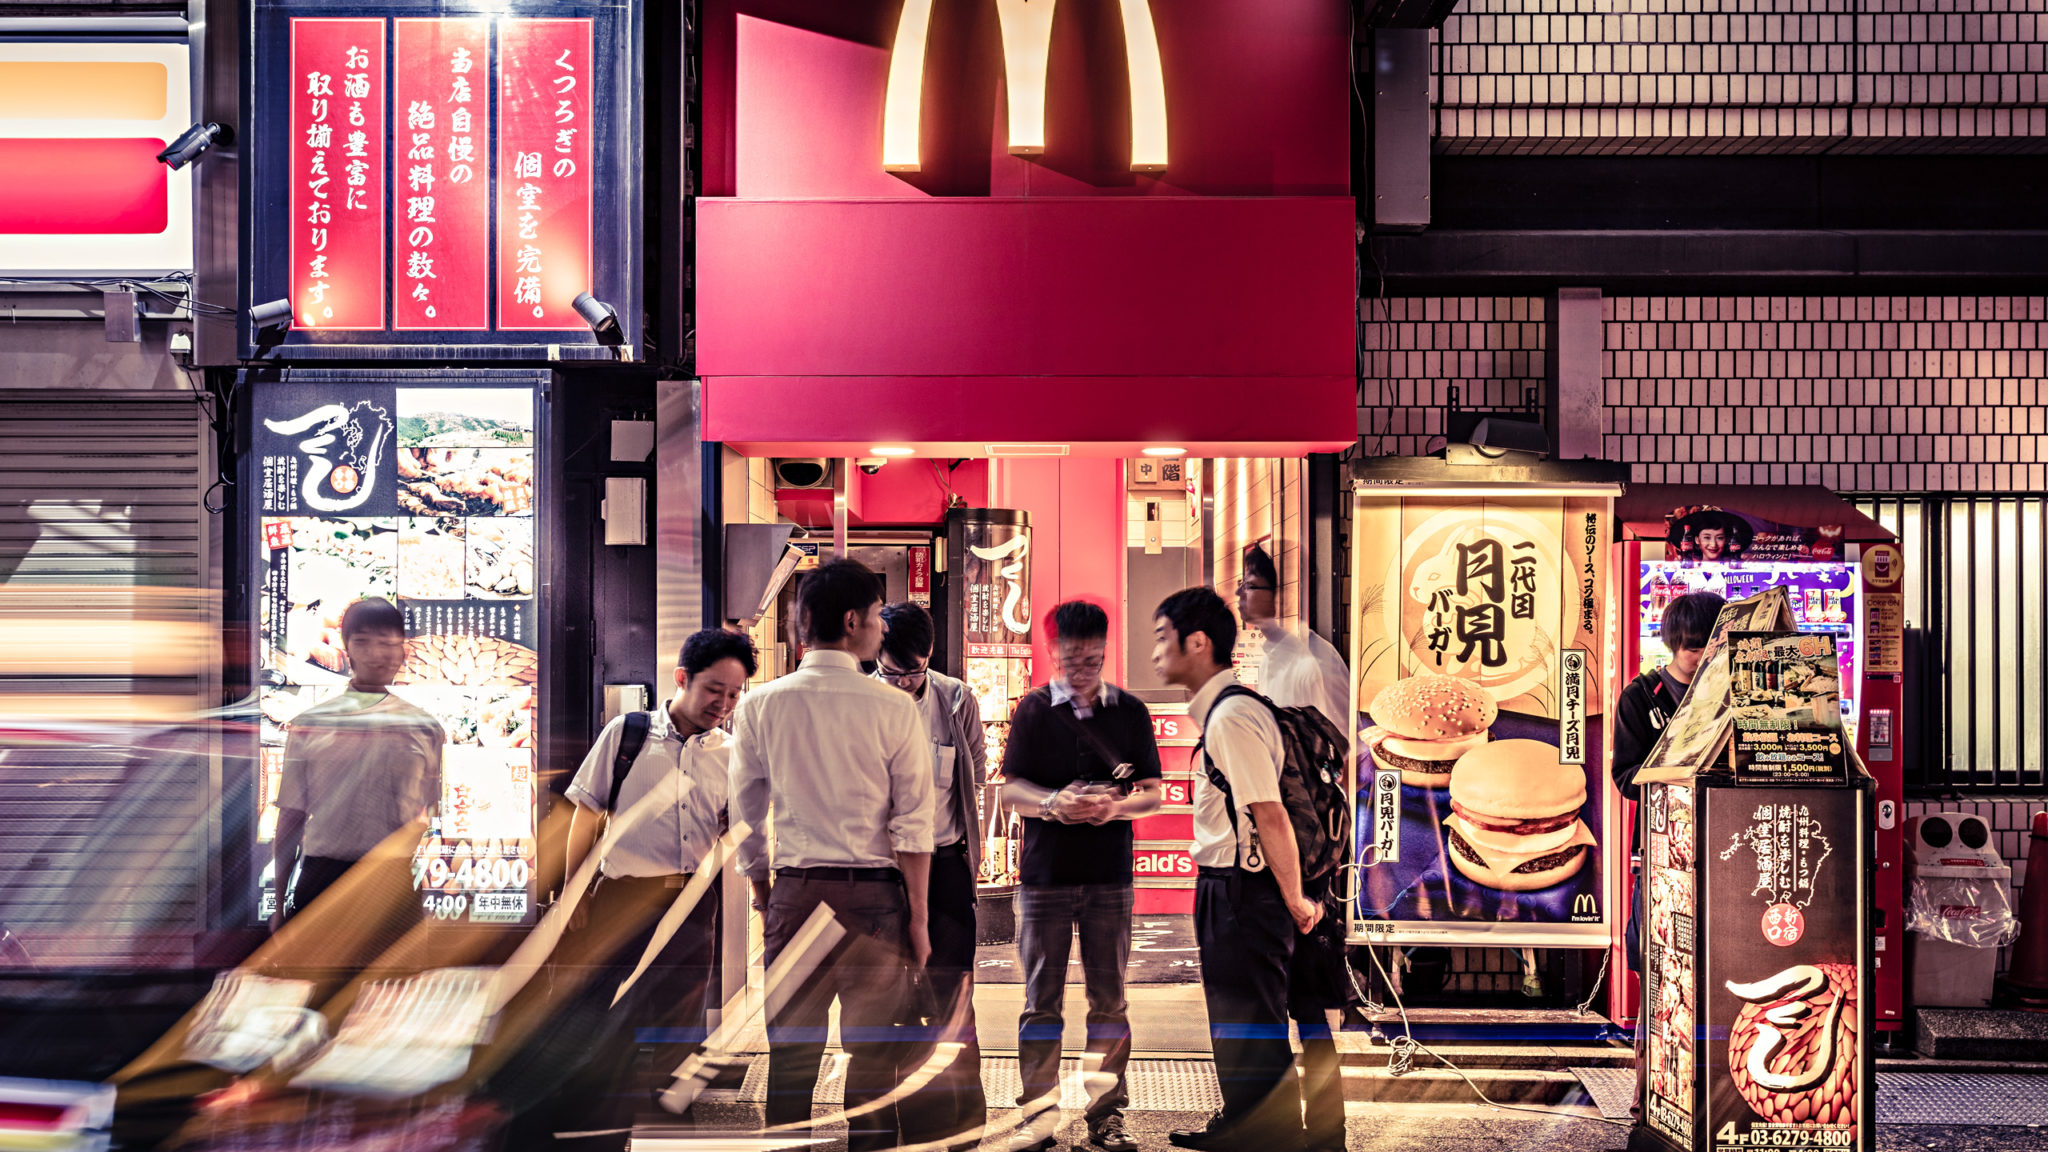 McDonalds Shinjuku Japan